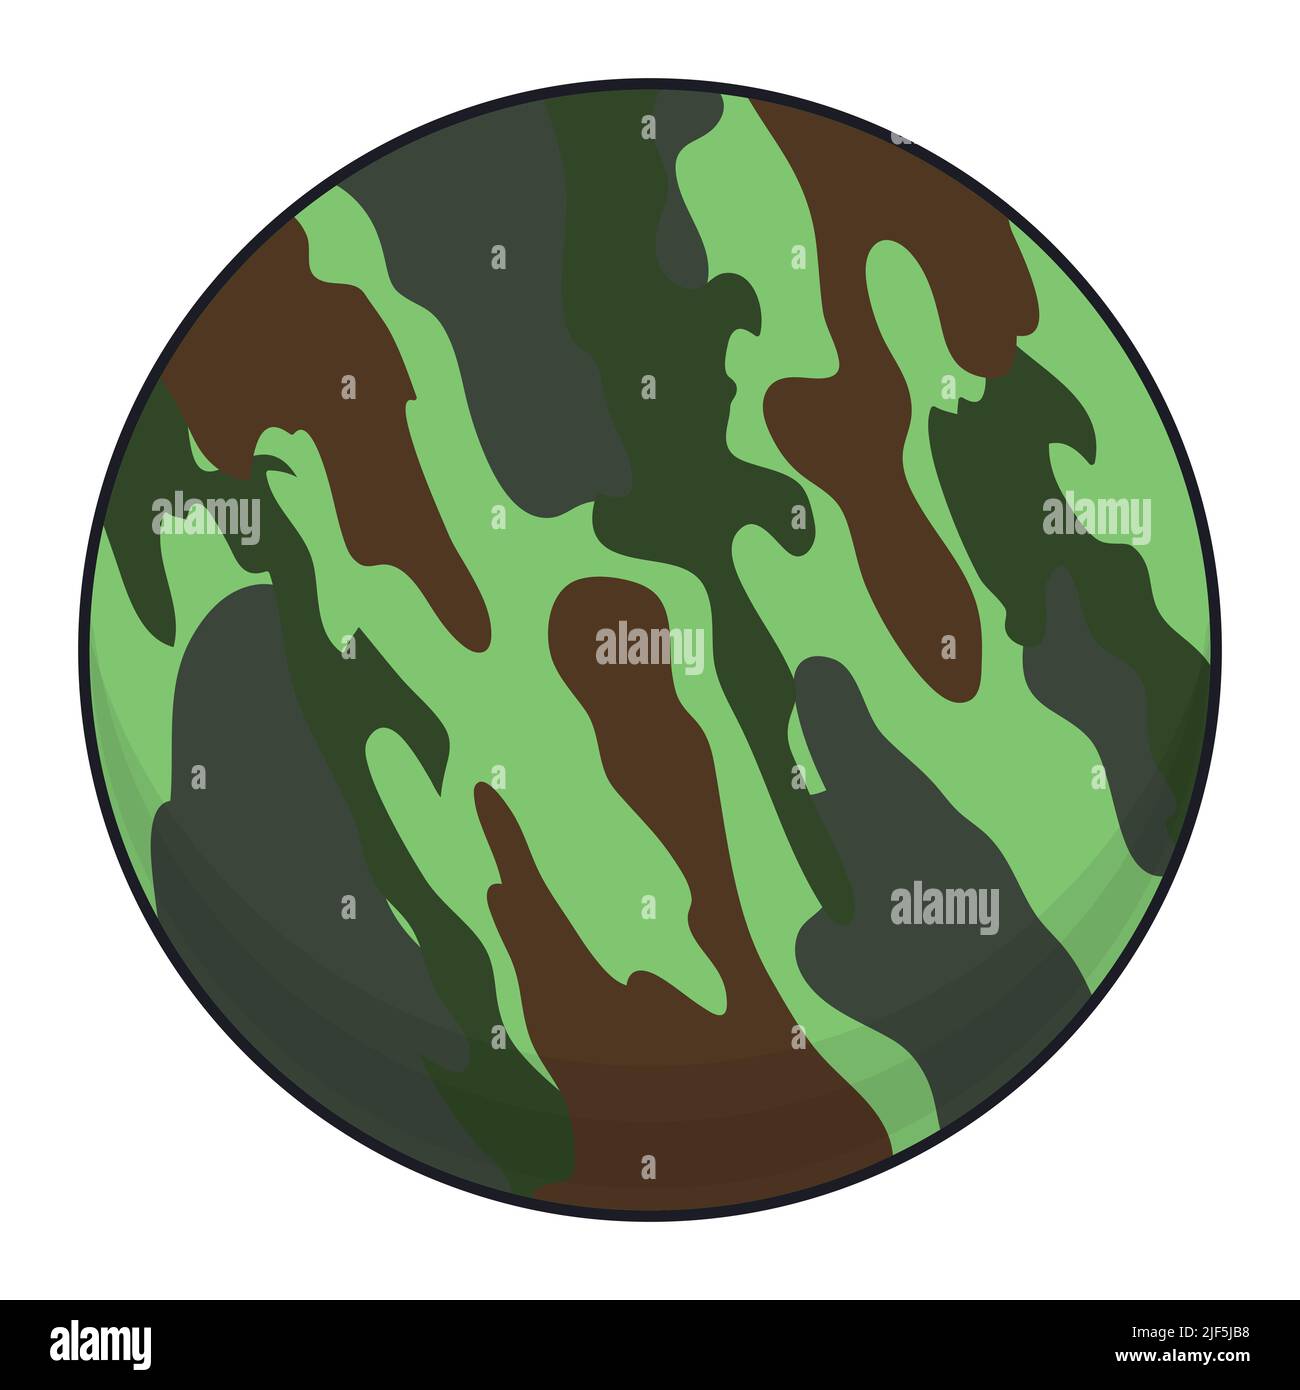 Bouton rond de couleur verte et marron, tel qu'un motif de camouflage opérationnel -OCP- texture. Illustration de Vecteur